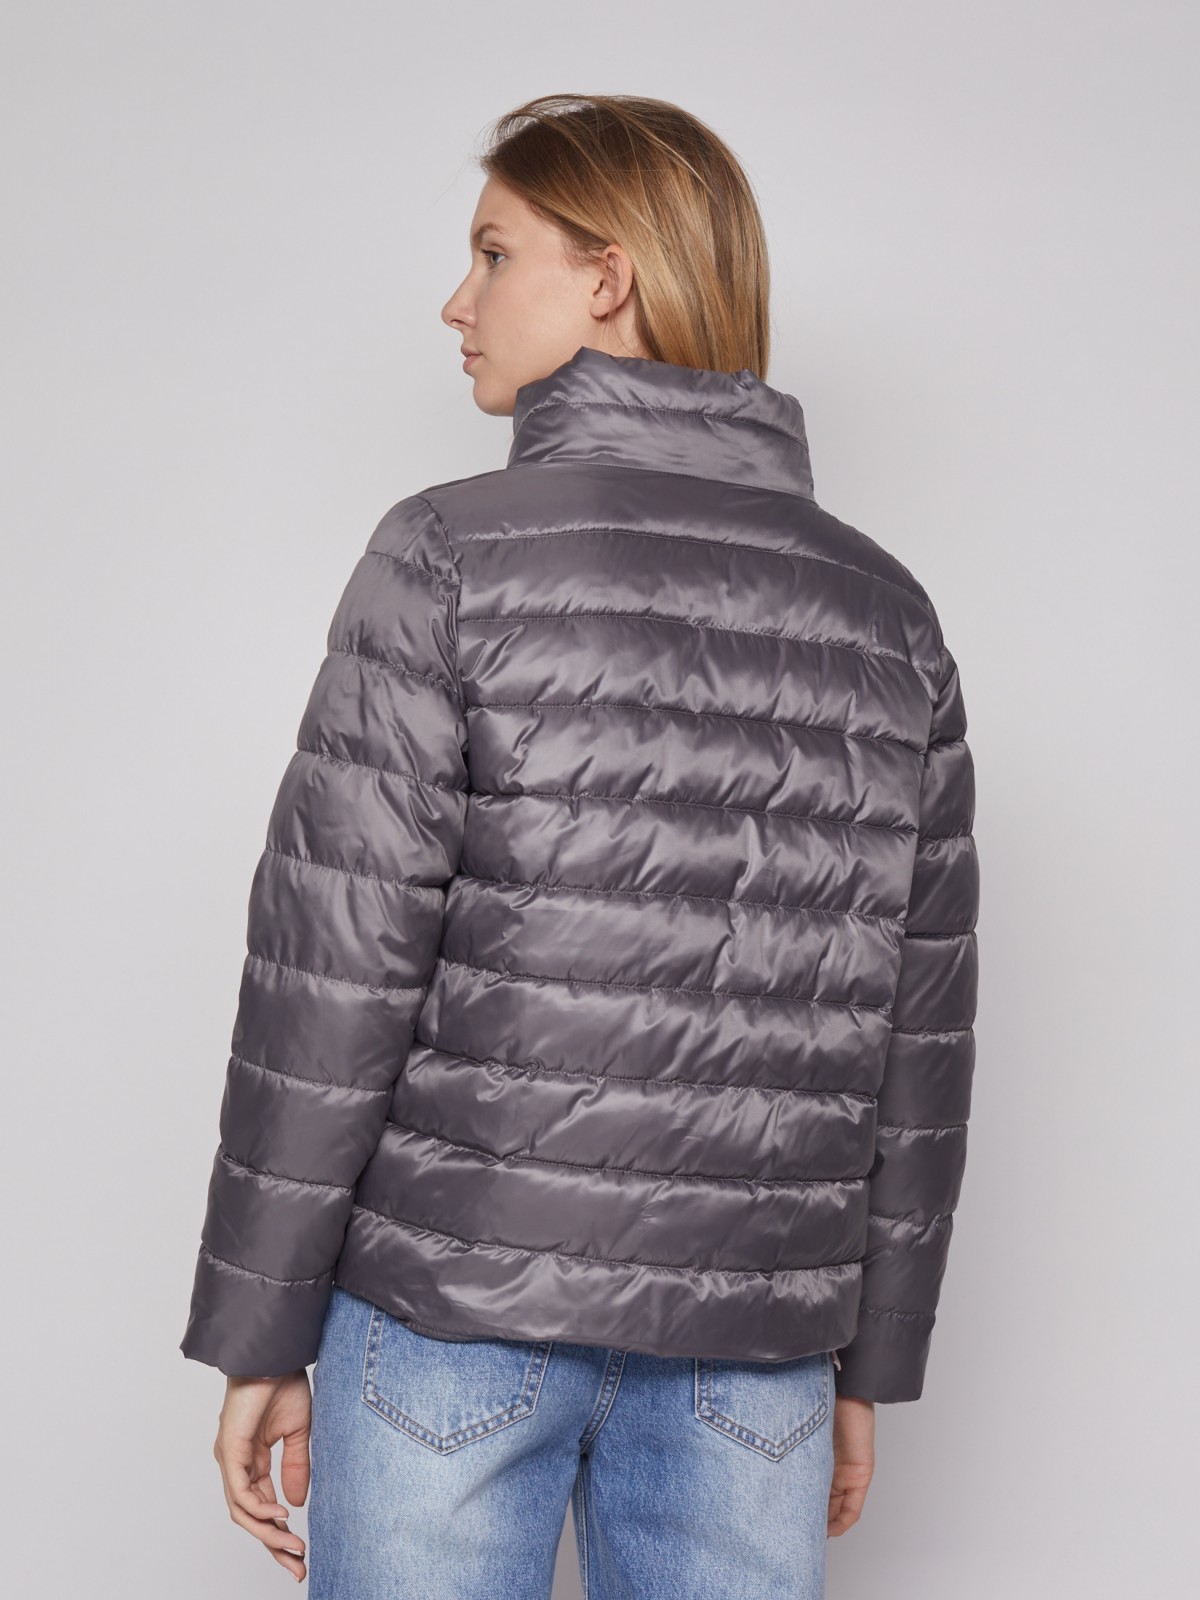 Лёгкая куртка с высоким воротником zolla 022125102234, цвет темно-серый, размер S - фото 6